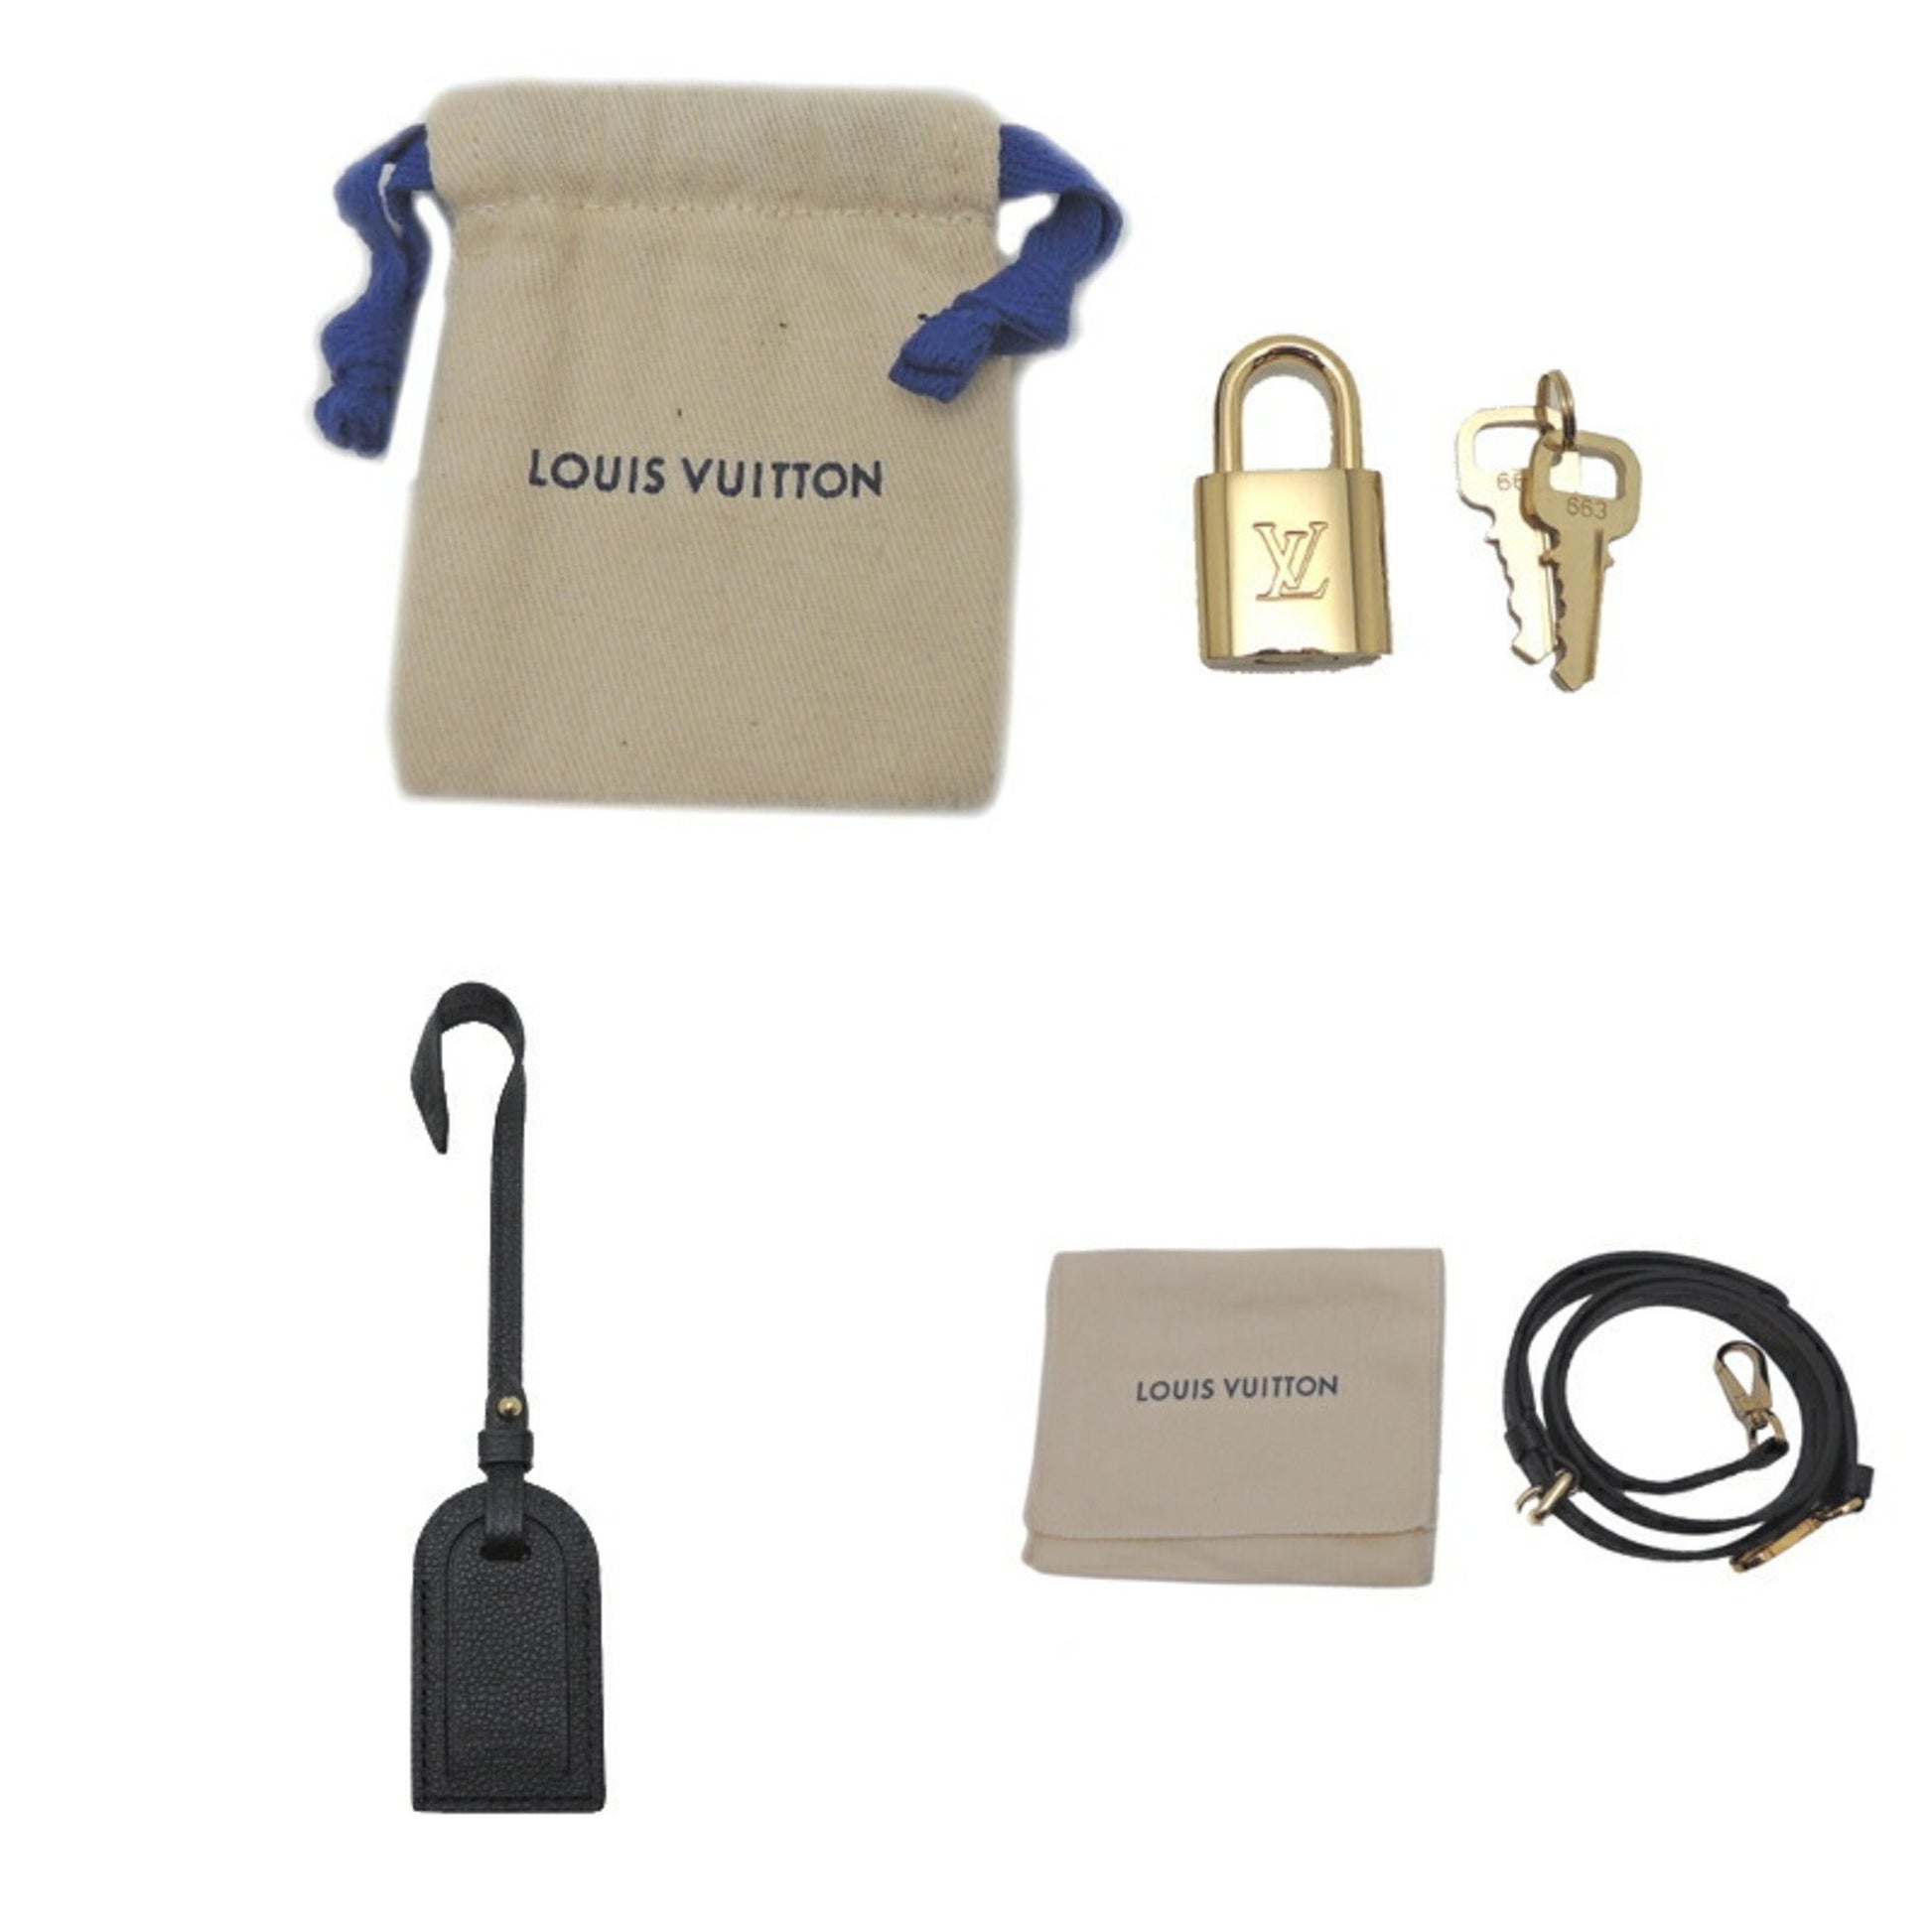 Shop Louis Vuitton MONOGRAM EMPREINTE Petit palais (M45900, M58916, M58914)  by puddingxxx